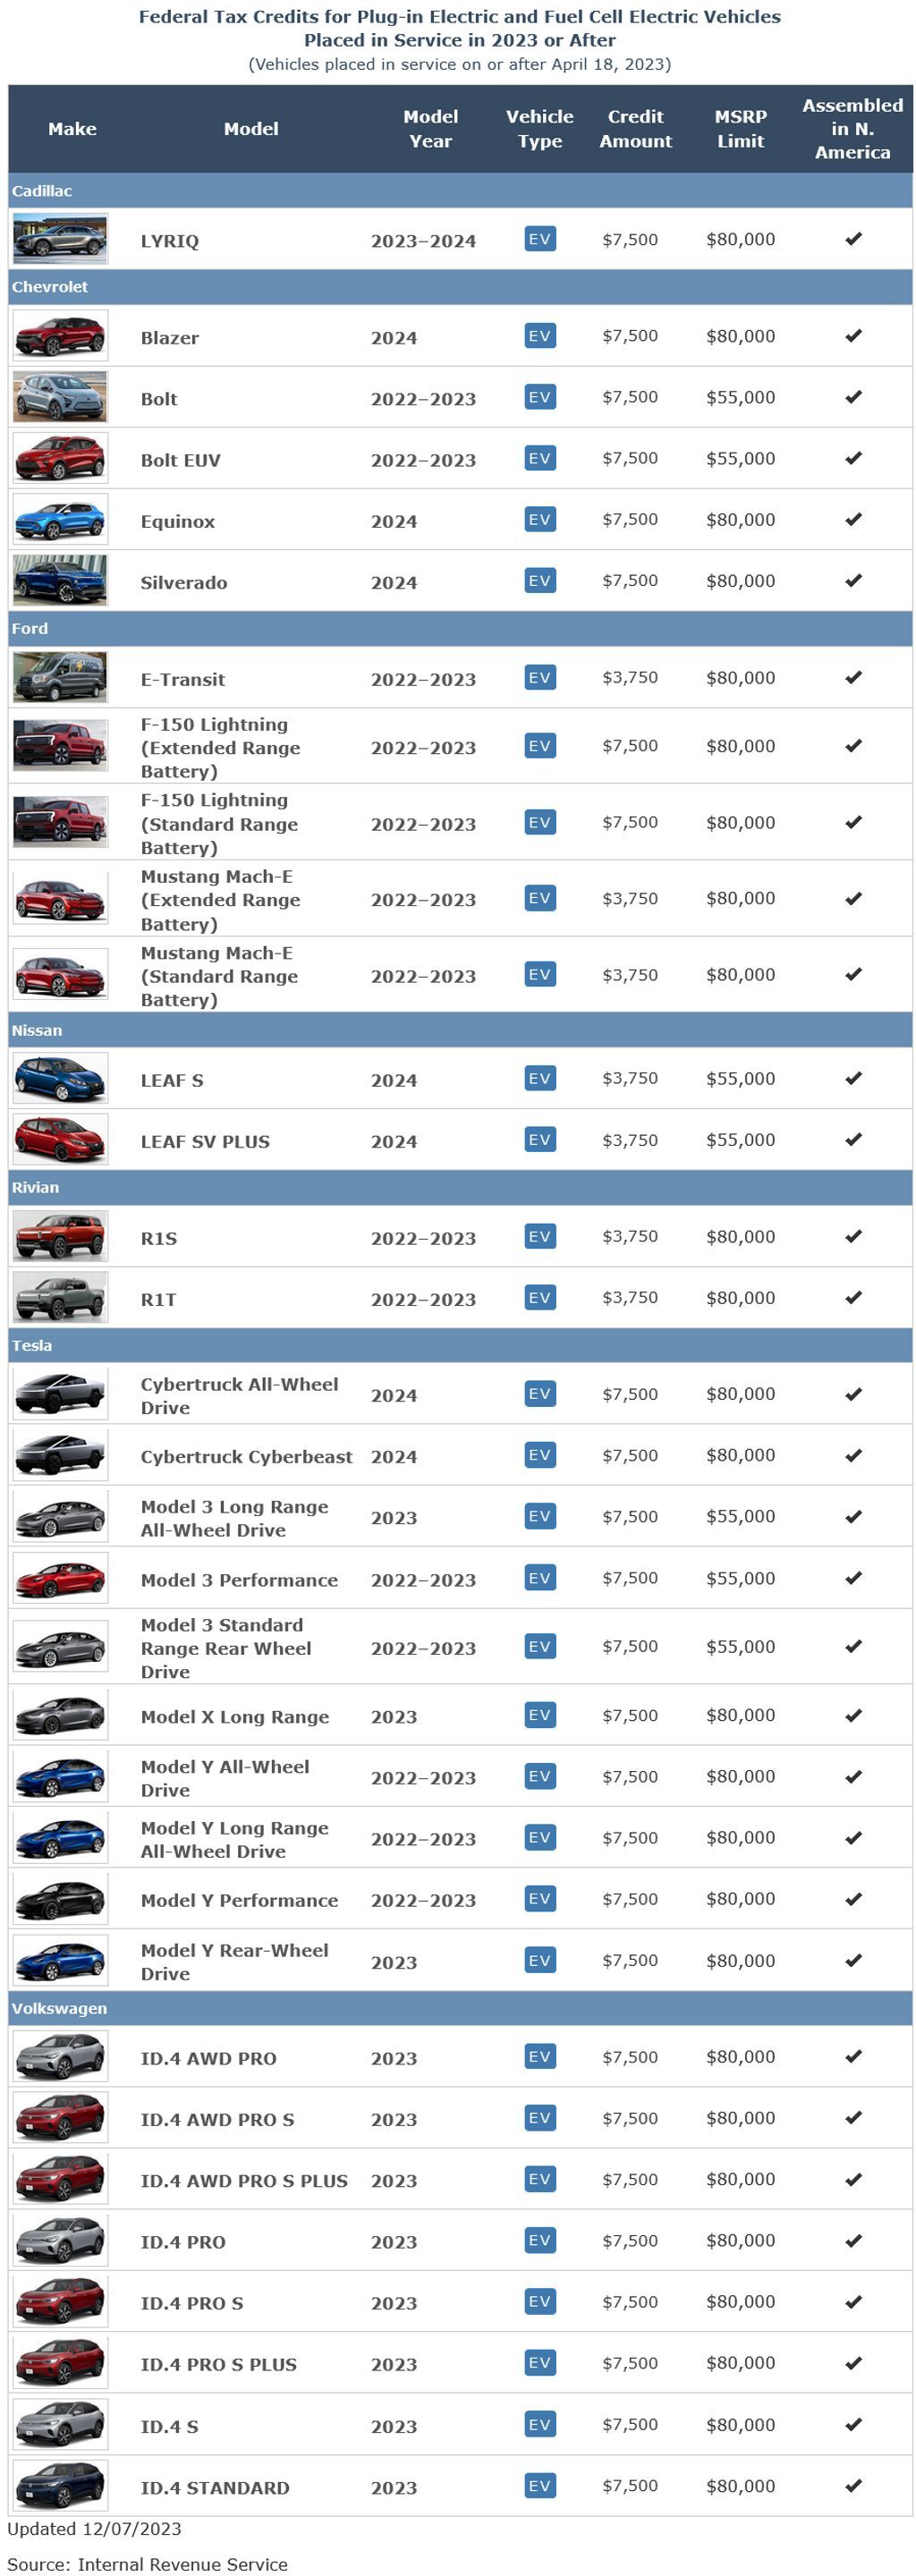 Tesla Cybertruck имеет право на налоговую льготу на электромобиль в размере 7500 долларов США, но есть одна загвоздка